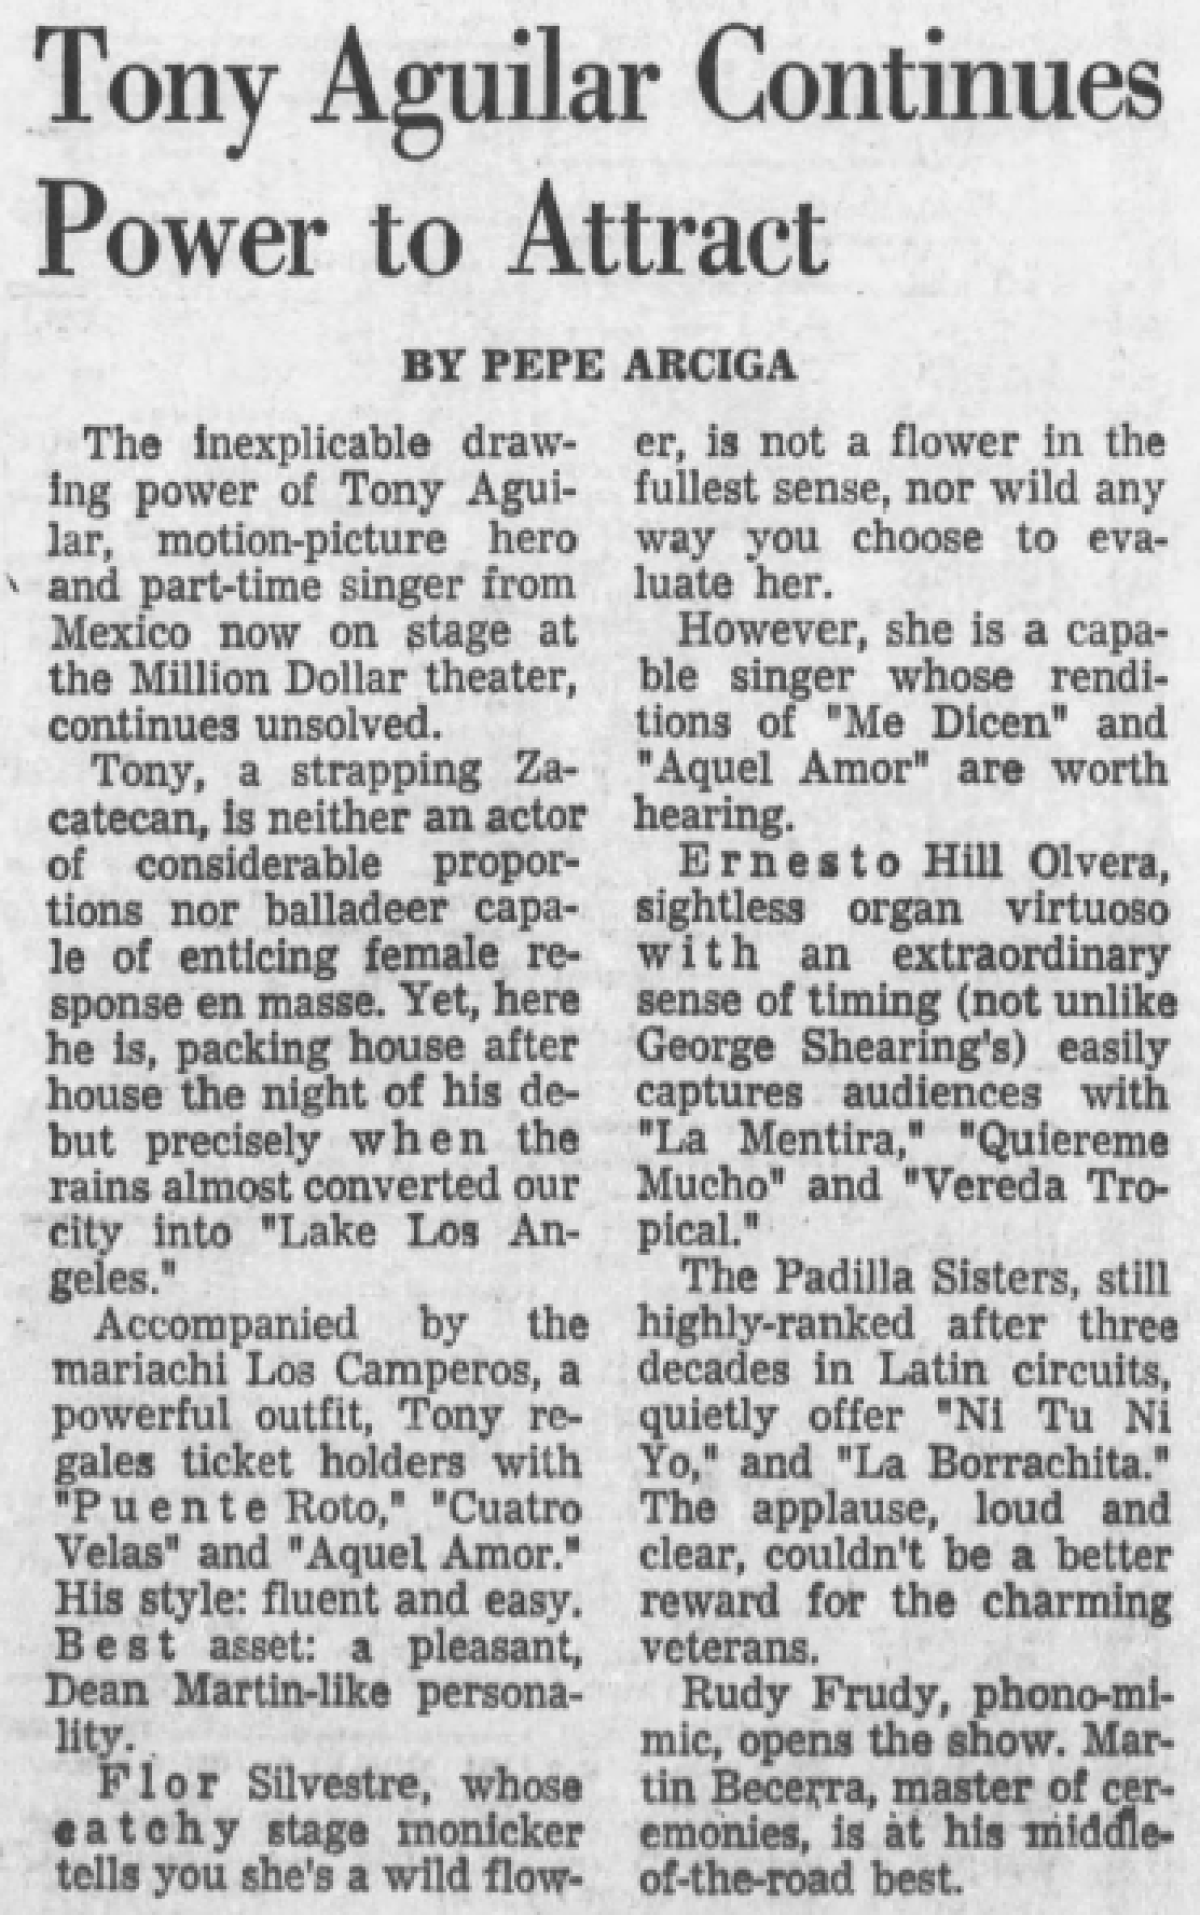 Reseña de 1966 publicada en Los Angeles Times, de un concierto de Antonio Aguilar en el Million Dollar Theater.